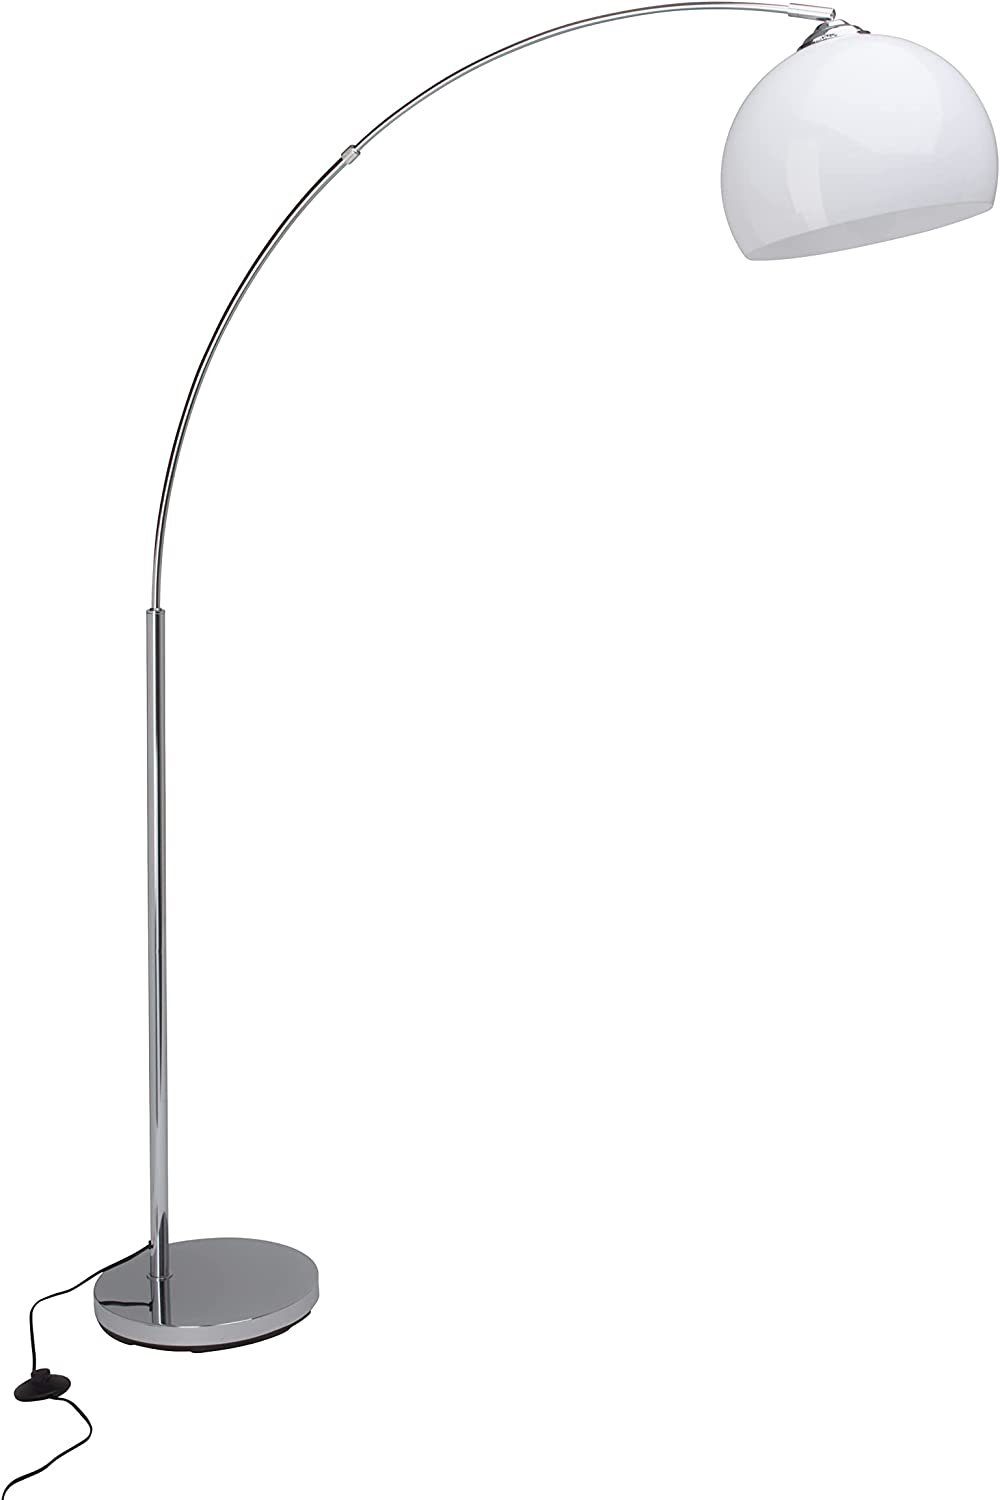 Brilliant Stehlampe Vessa, ZWEITE WAHL Lampe Vessa Bogenstandleuchte 1,7m  chrom/weiß, Große Bogenstehleuchte mit 1,66m Höhe